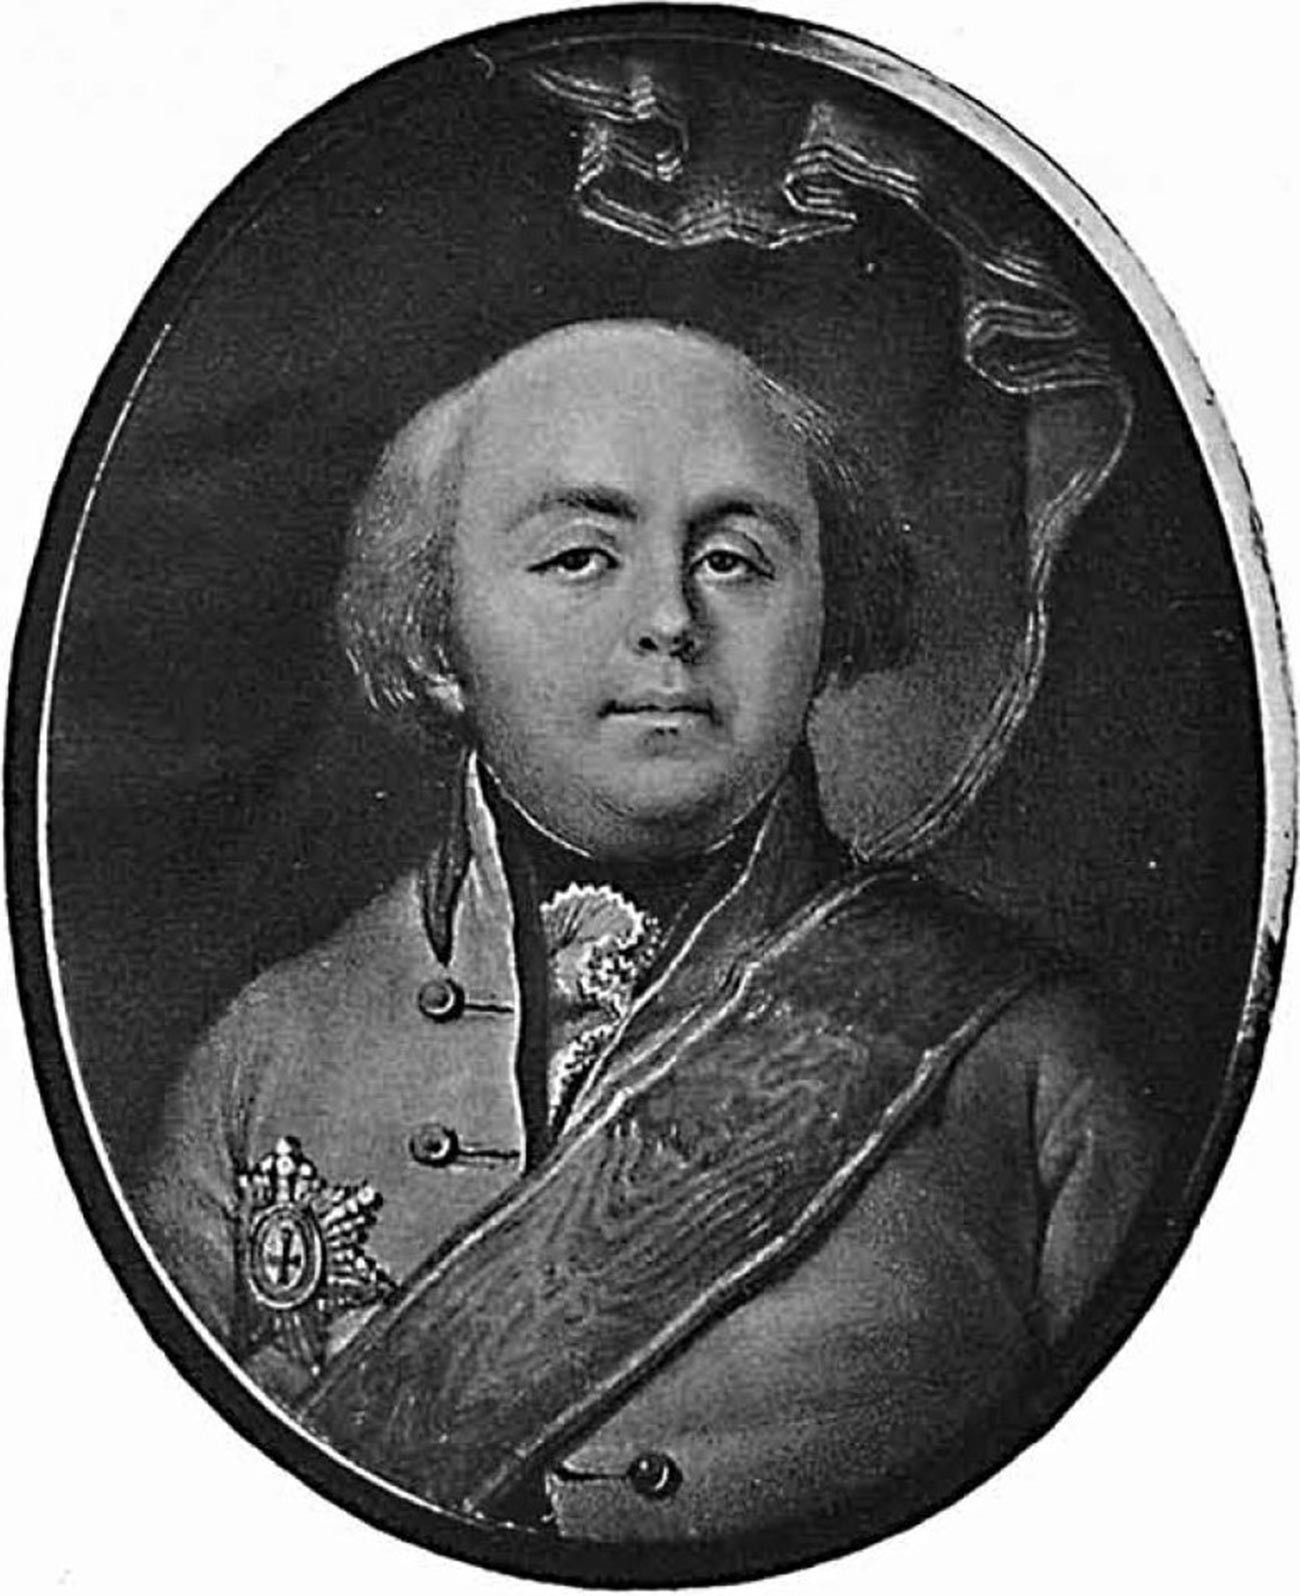 Knez Aleksej Grigorjevič Bobrinski

